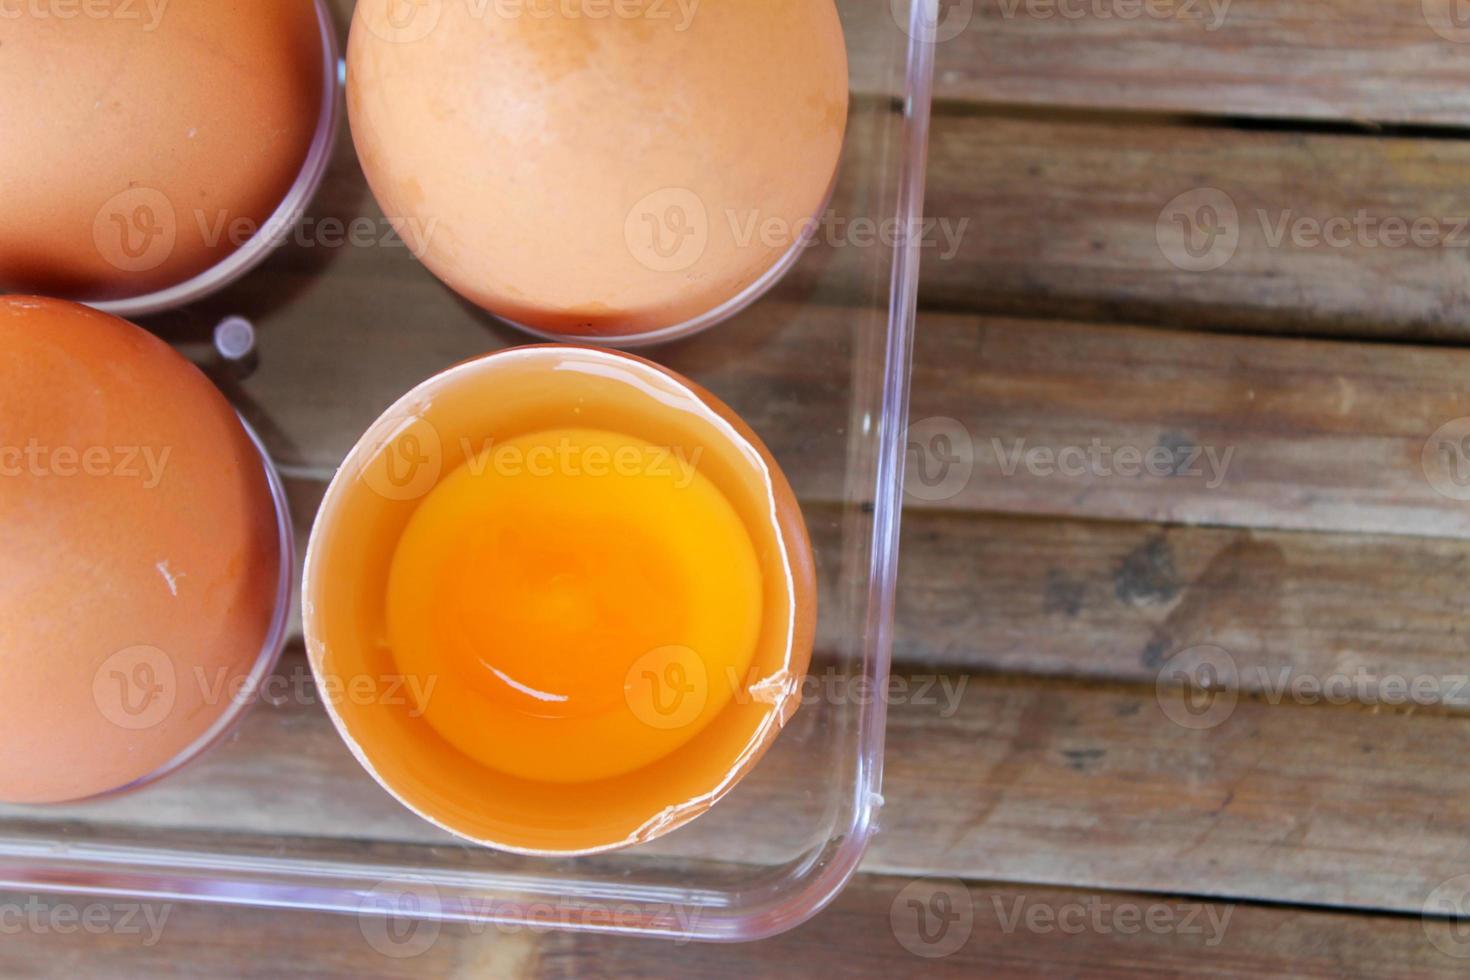 vista superior de la cáscara de huevo rota con yema amarilla cerca de los huevos en una caja de plástico foto